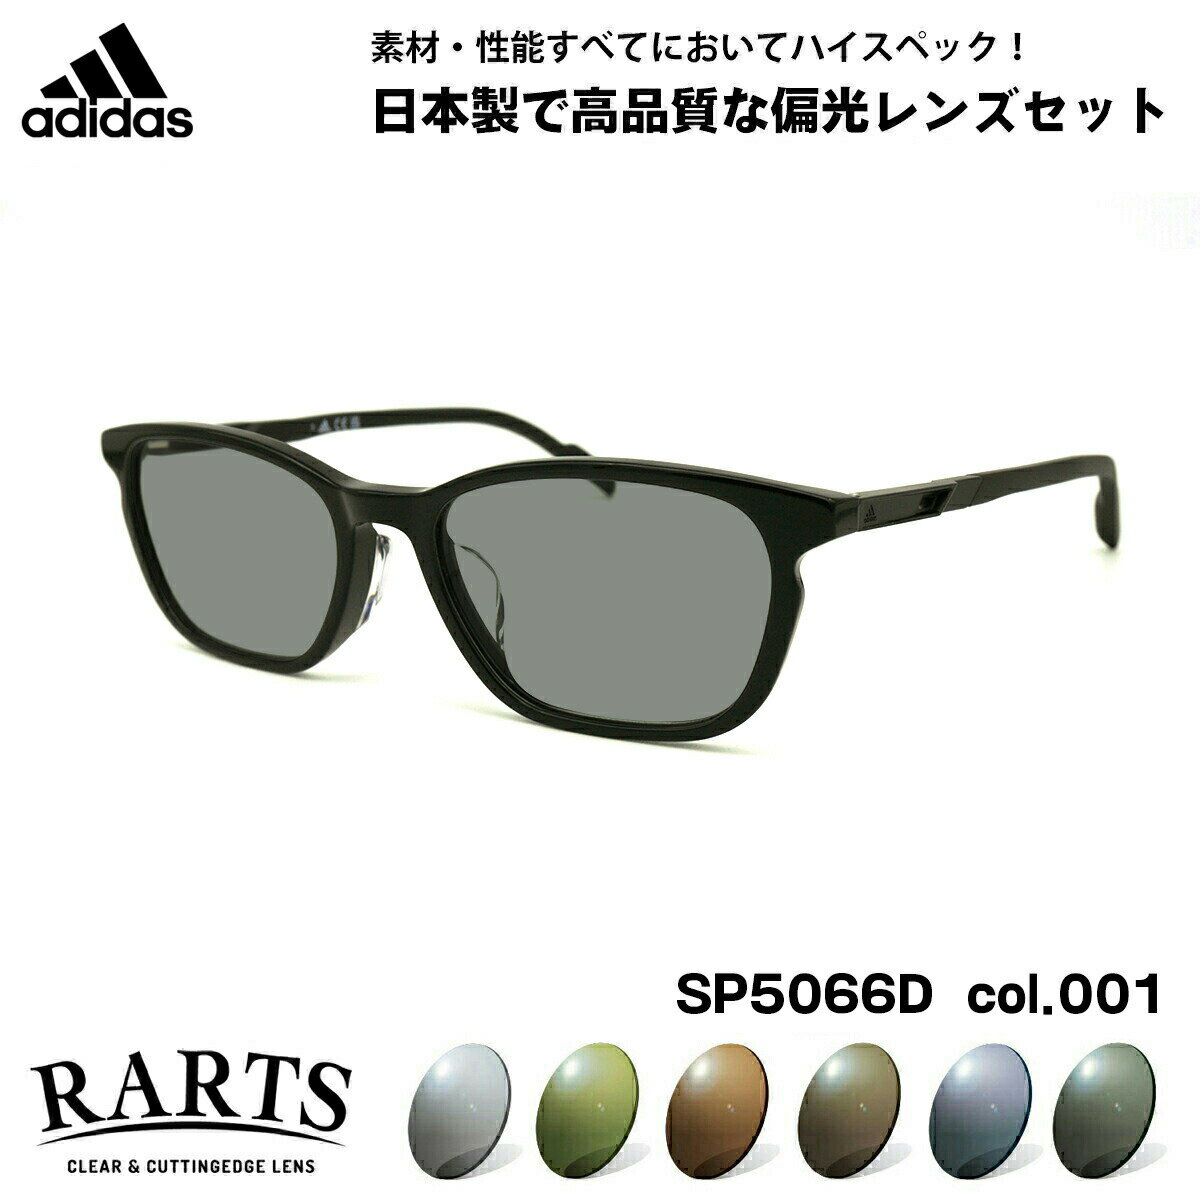 アディダス アディダス 偏光 サングラス RARTS SP5066D (SP5066D/V) col.001 54mm adidas アジアンフィット アーツ UVカット